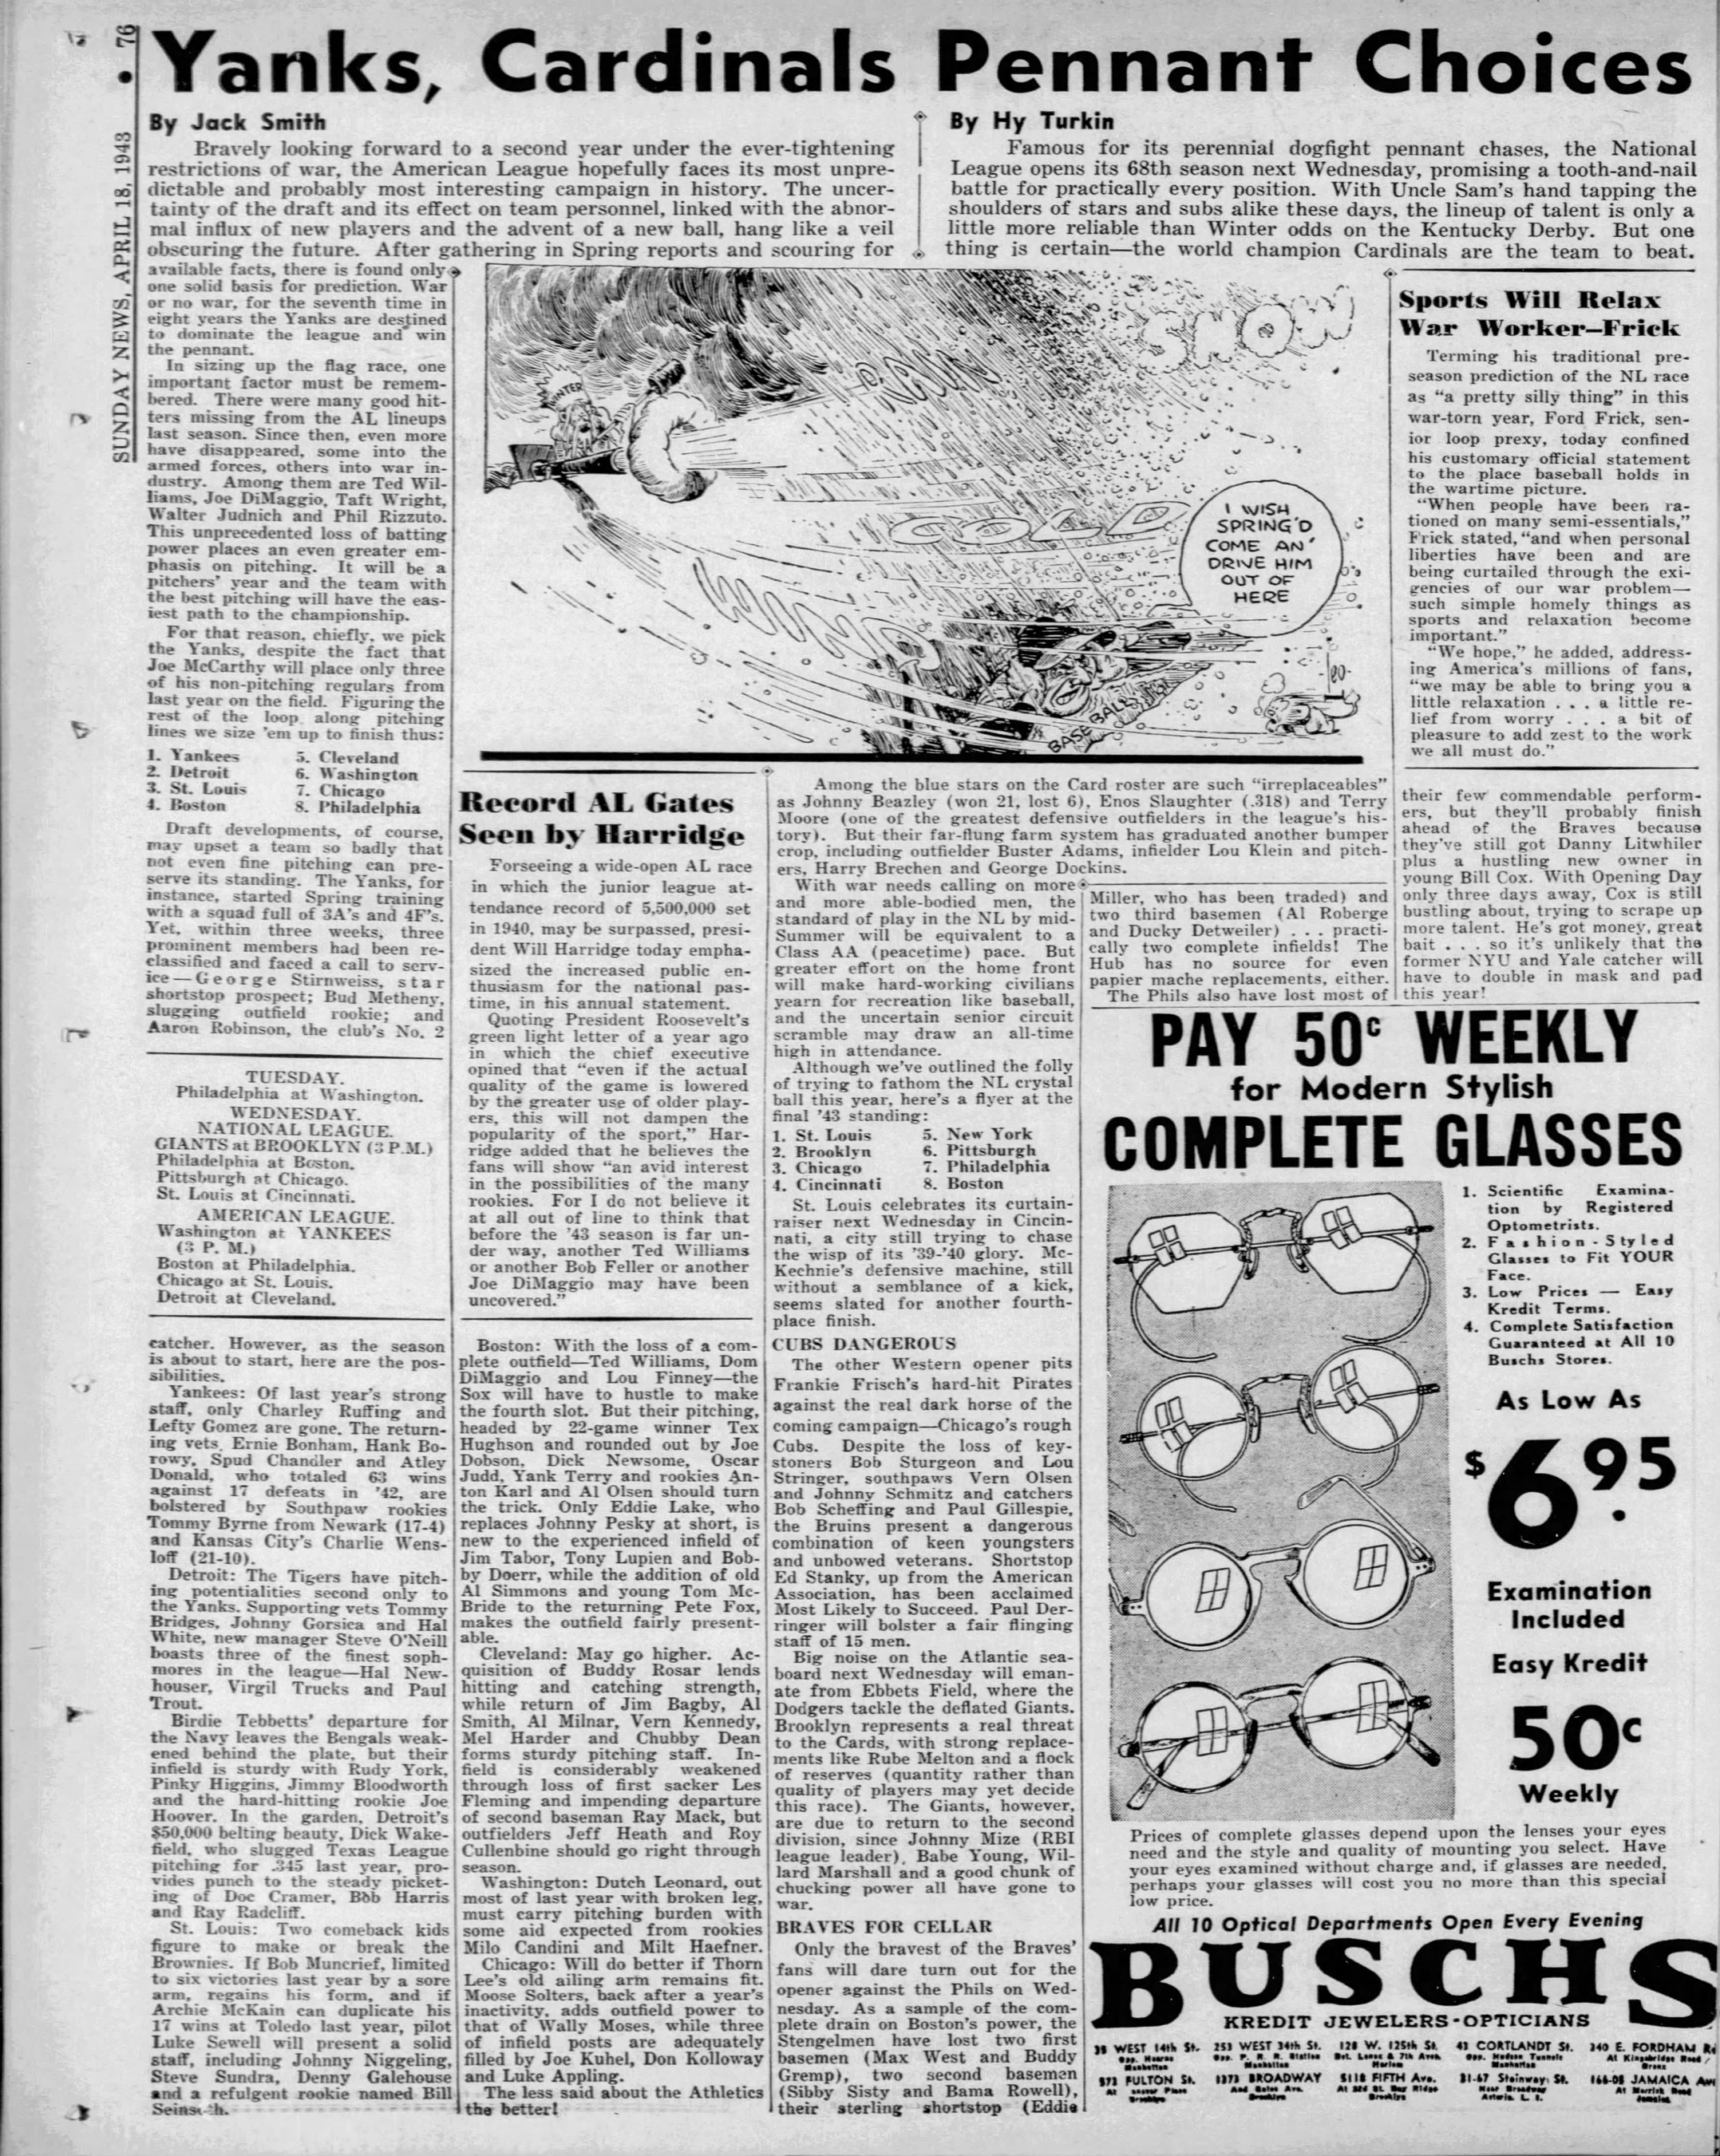 Daily_News_Sun__Apr_18__1943_(2).jpg